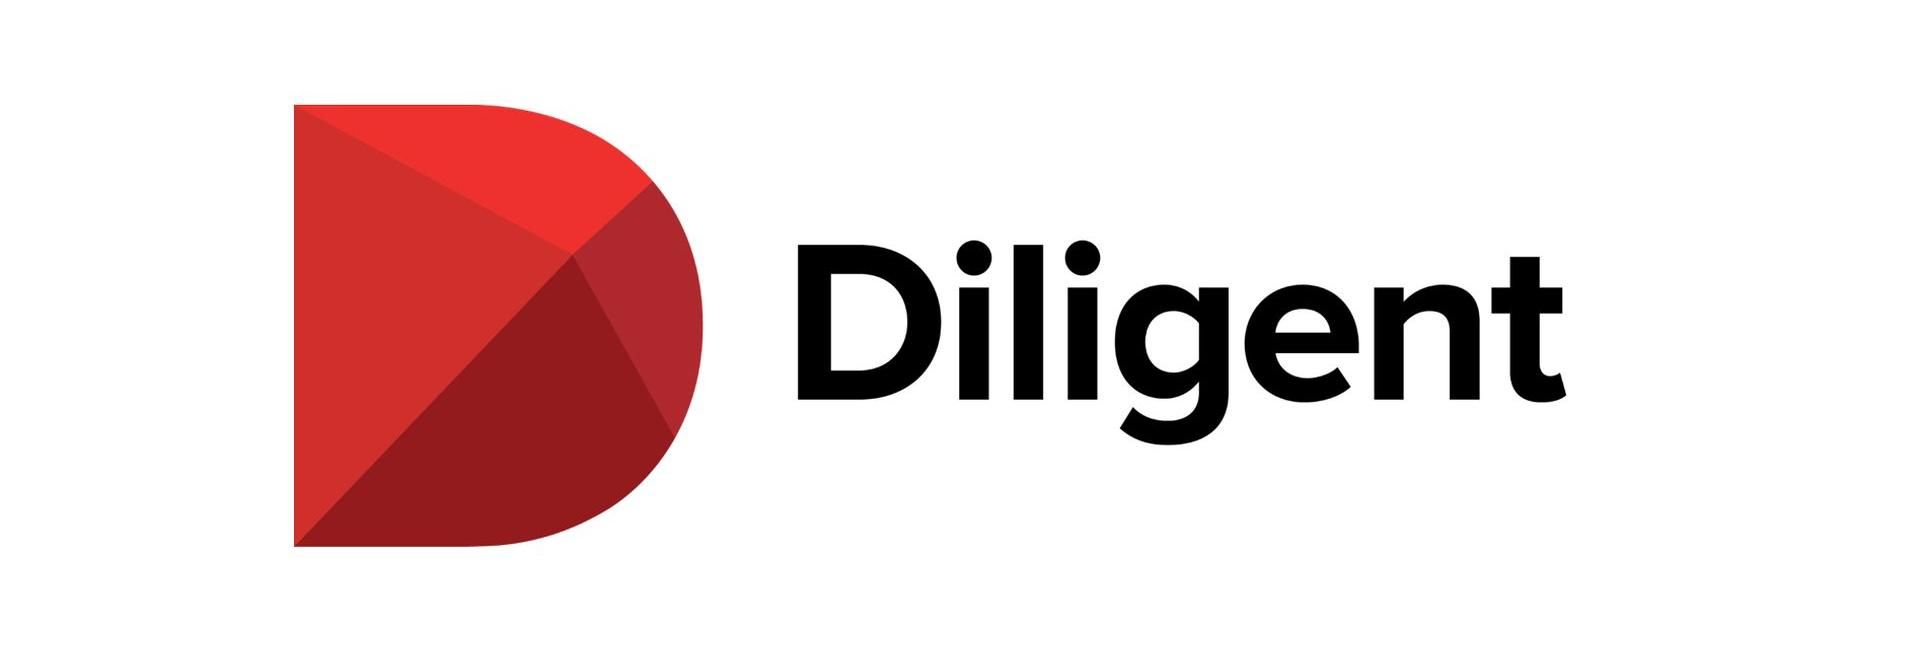 Budapesten hozza létre globális termékfejlesztő központját a Diligent - VIDEÓRIPORT